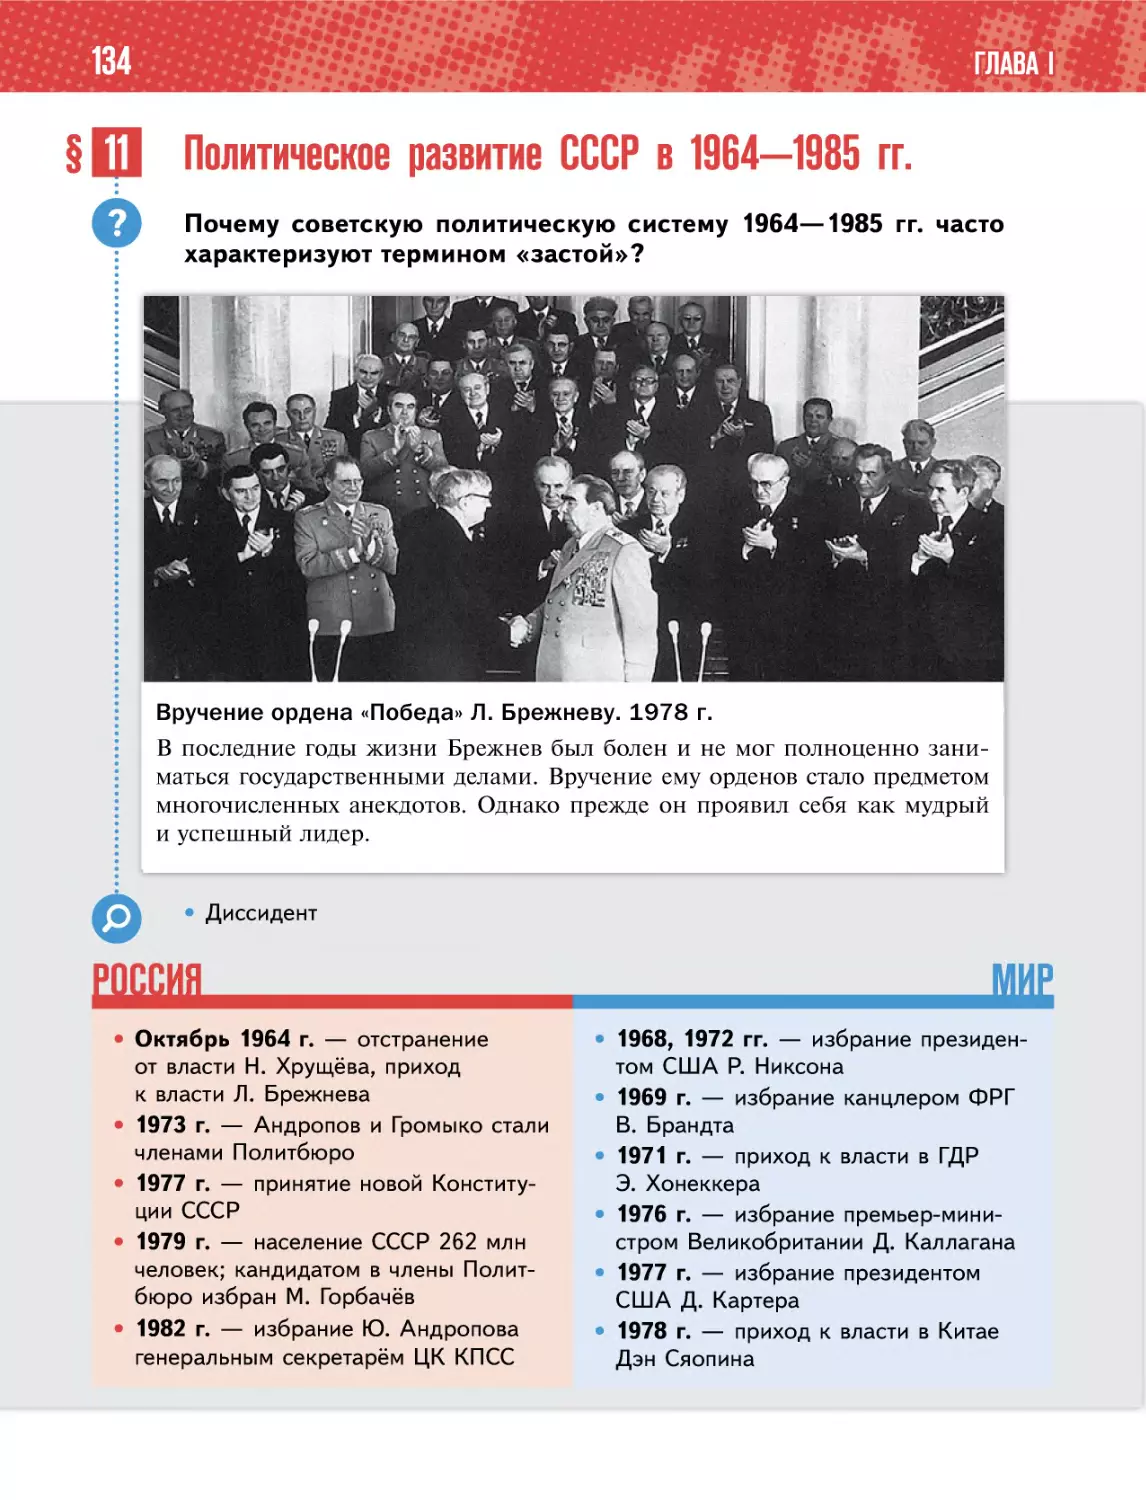 § 11 Политическое развитие СССР в 1964—1985 гг.